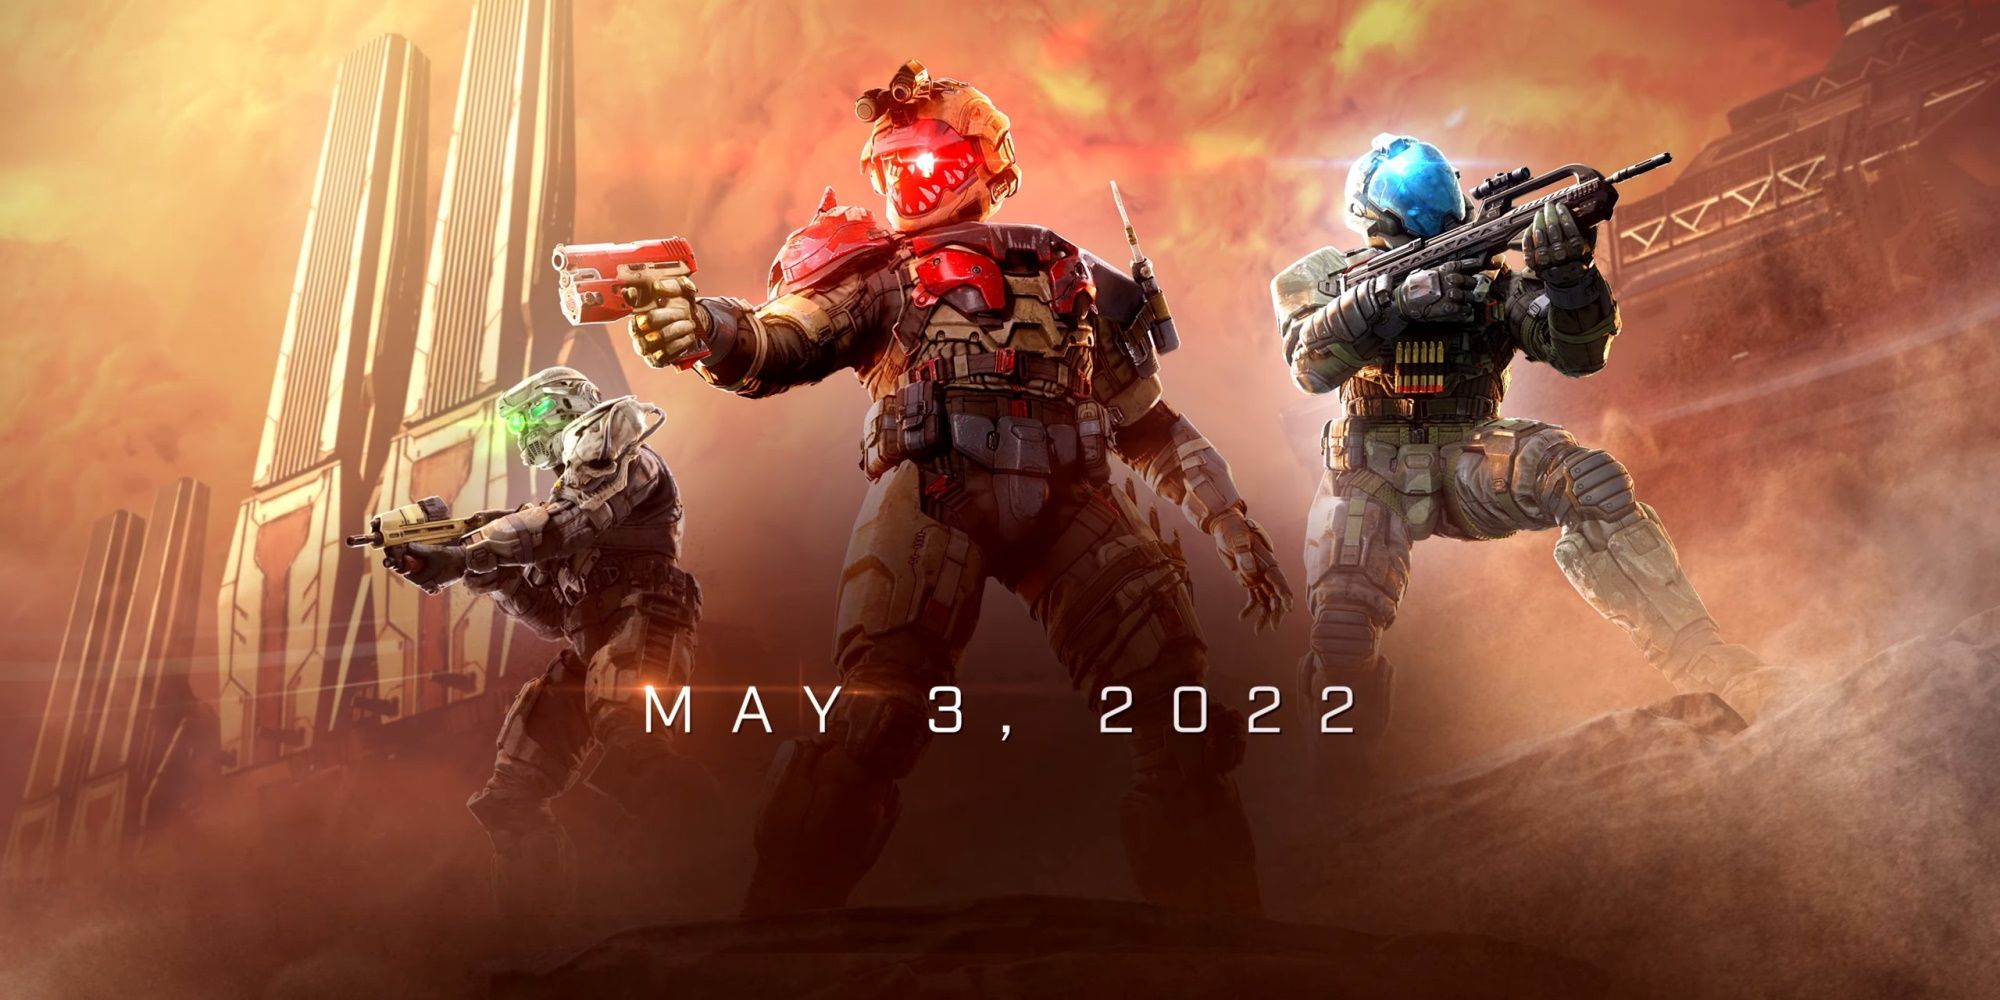 Halo Infinite Season 2 - via Microsoft